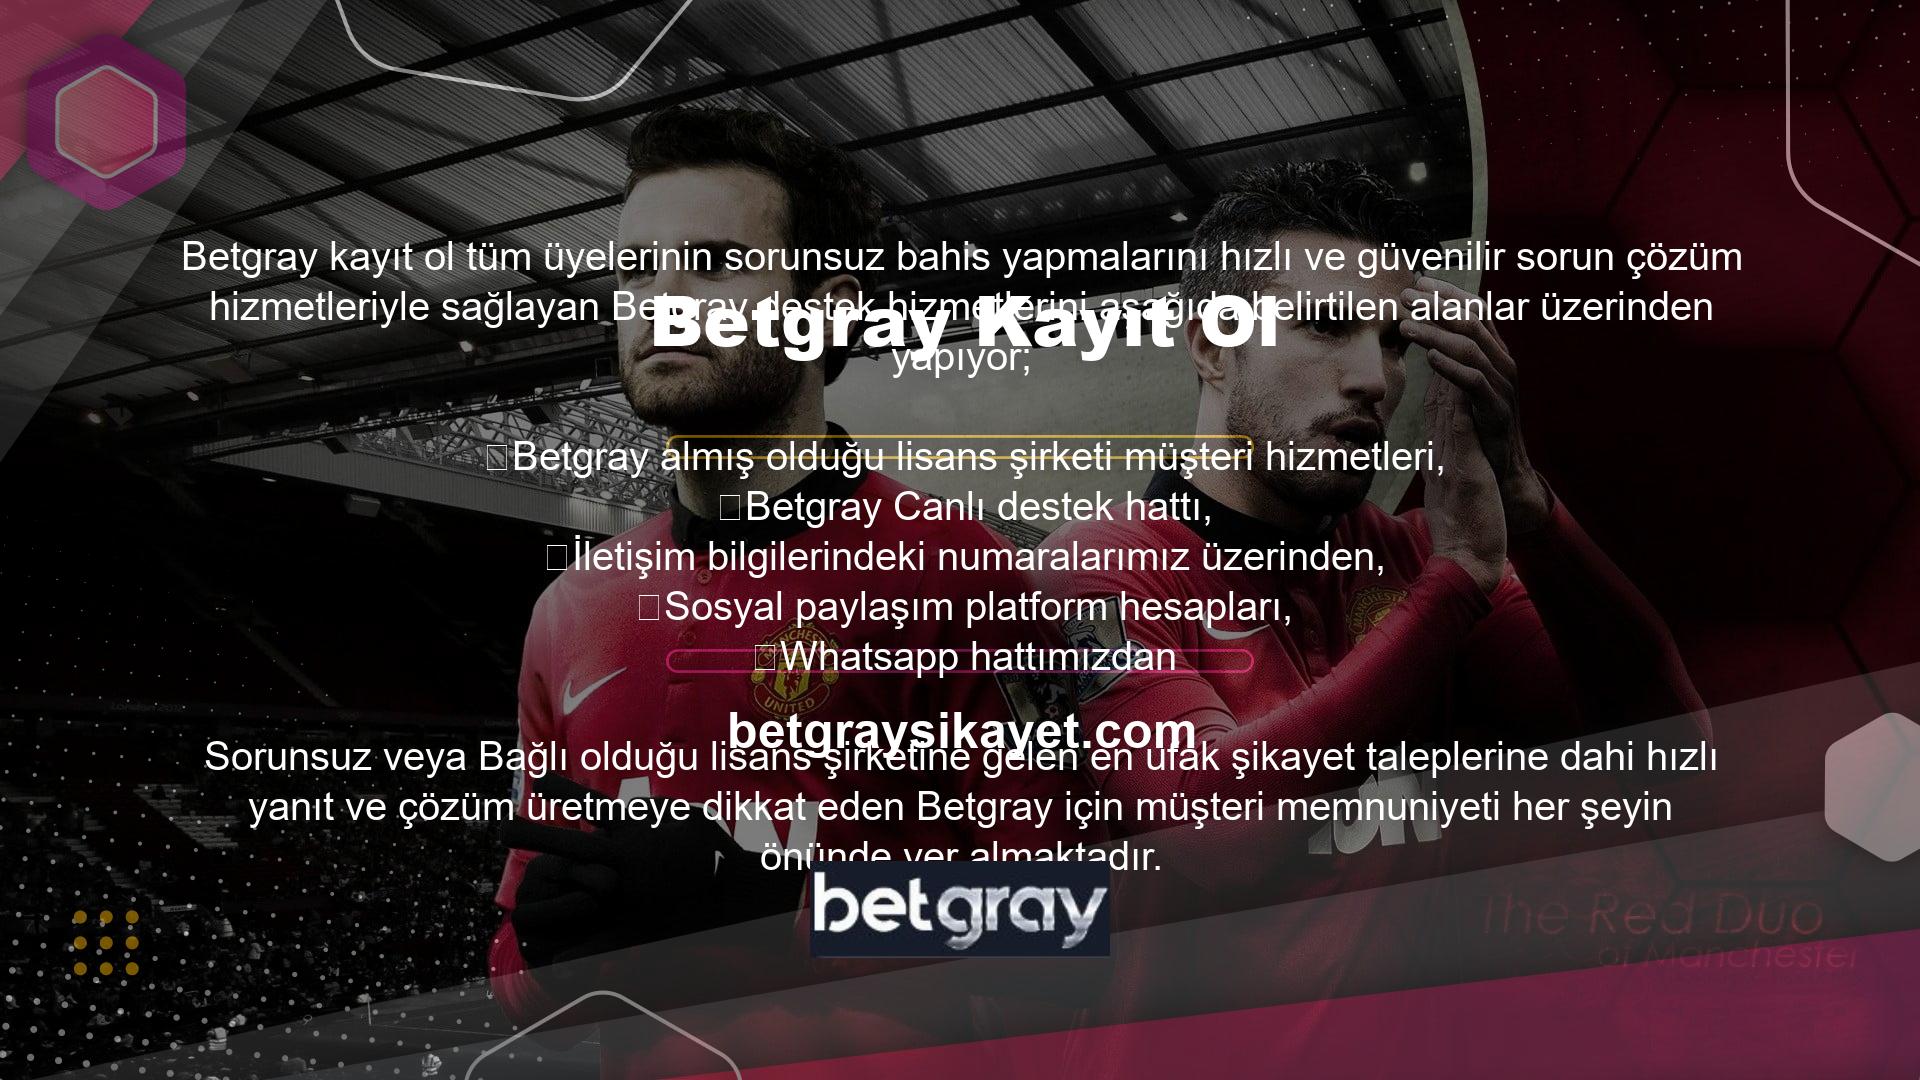 Betgray Canlı Destek Hizmeti Çalışma SaatleriYüzlerce üyesi bulunan Betgray kısa sürede dünyanın zirvesine çıkmış ve Betgray kesintisiz canlı destek sağlamaktadır